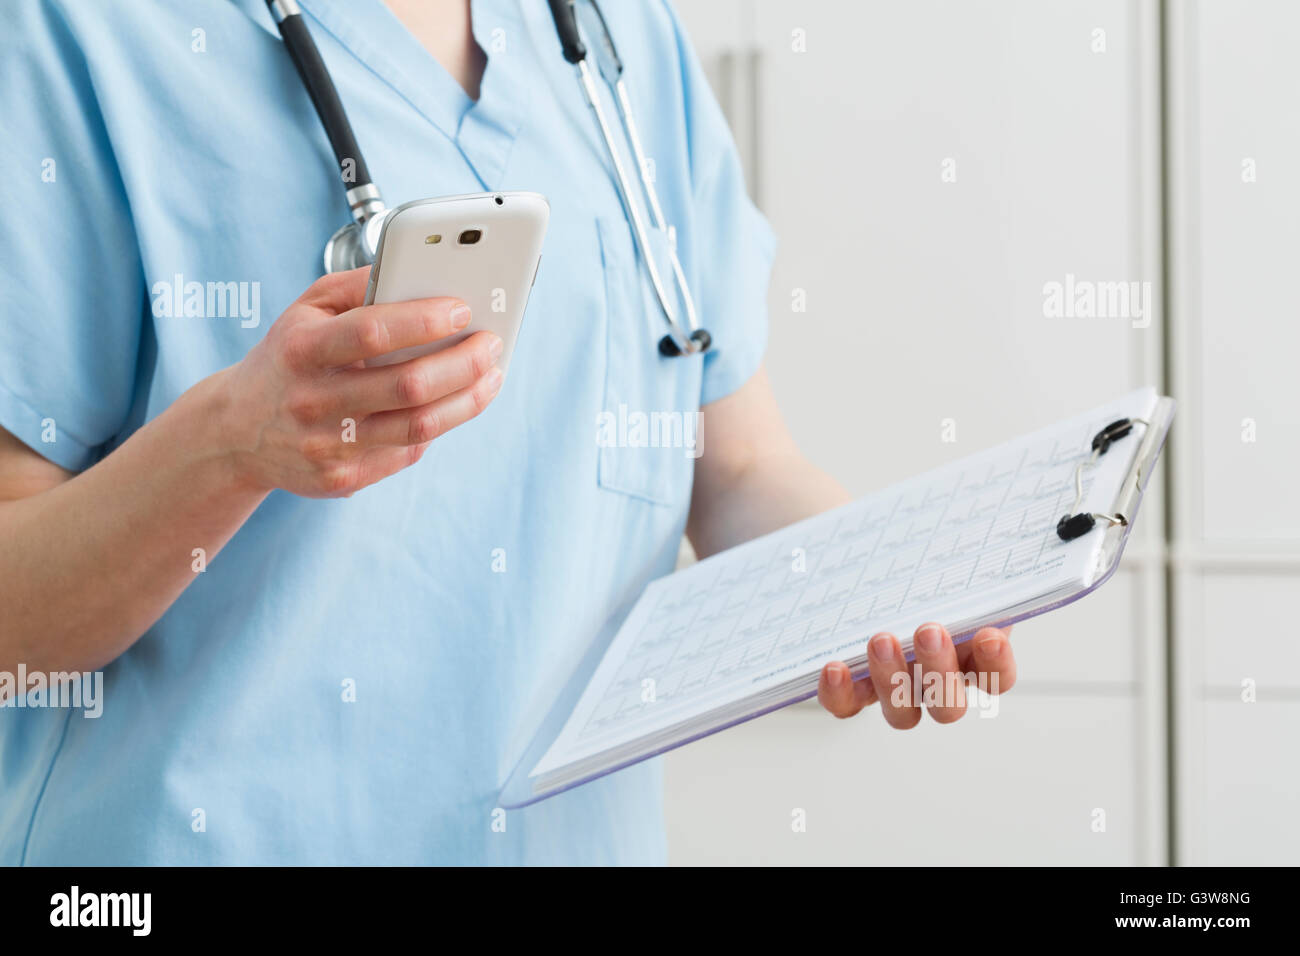 Enfermera la celebración de smart phone y registros médicos Foto de stock